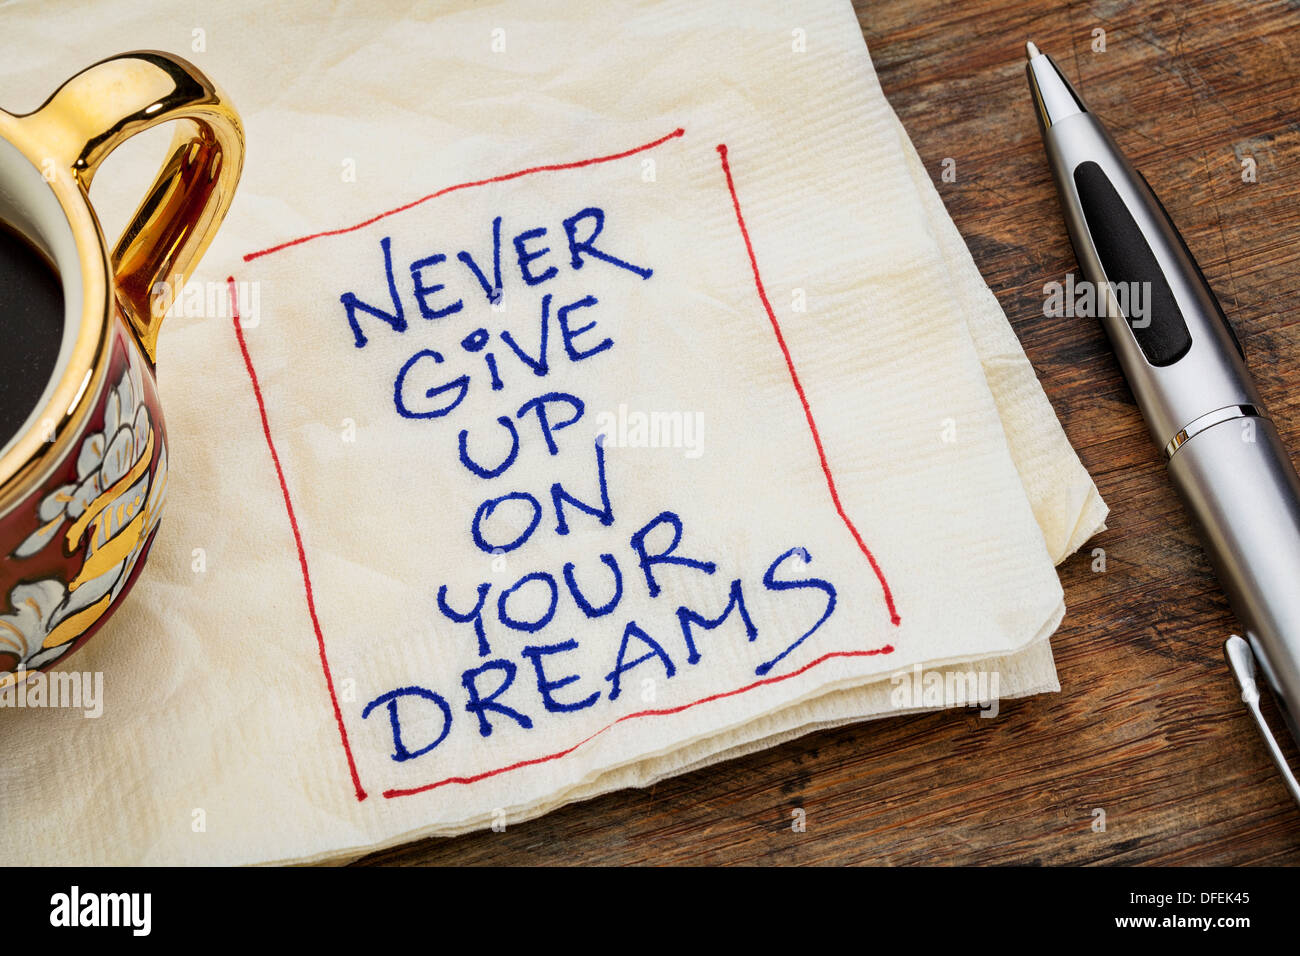 Never give up auf Ihre Träume-Erinnerung - eine Serviette Doodle mit einer Tasse Espressokaffee Stockfoto